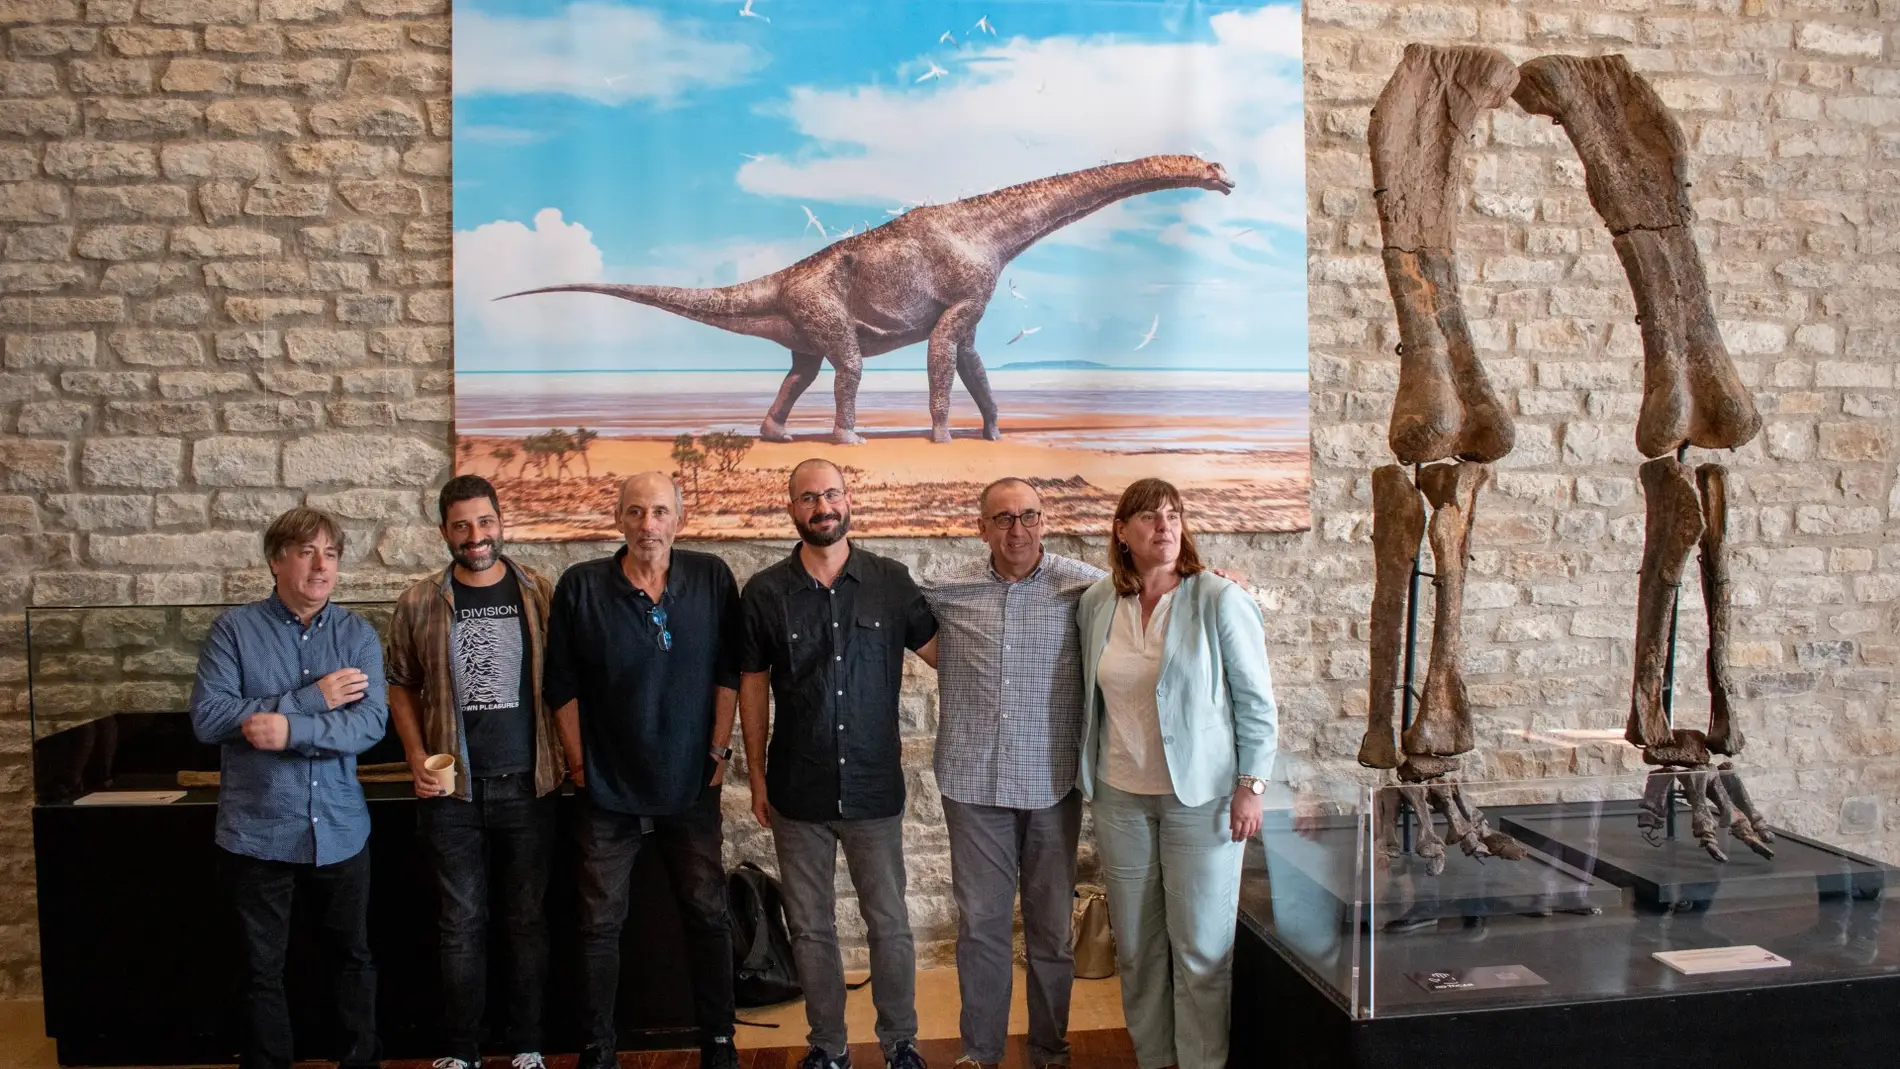 Presentan a uno de los dinosaurios más grandes del mundo descubierto en Morella: Garumbatitan morellensis